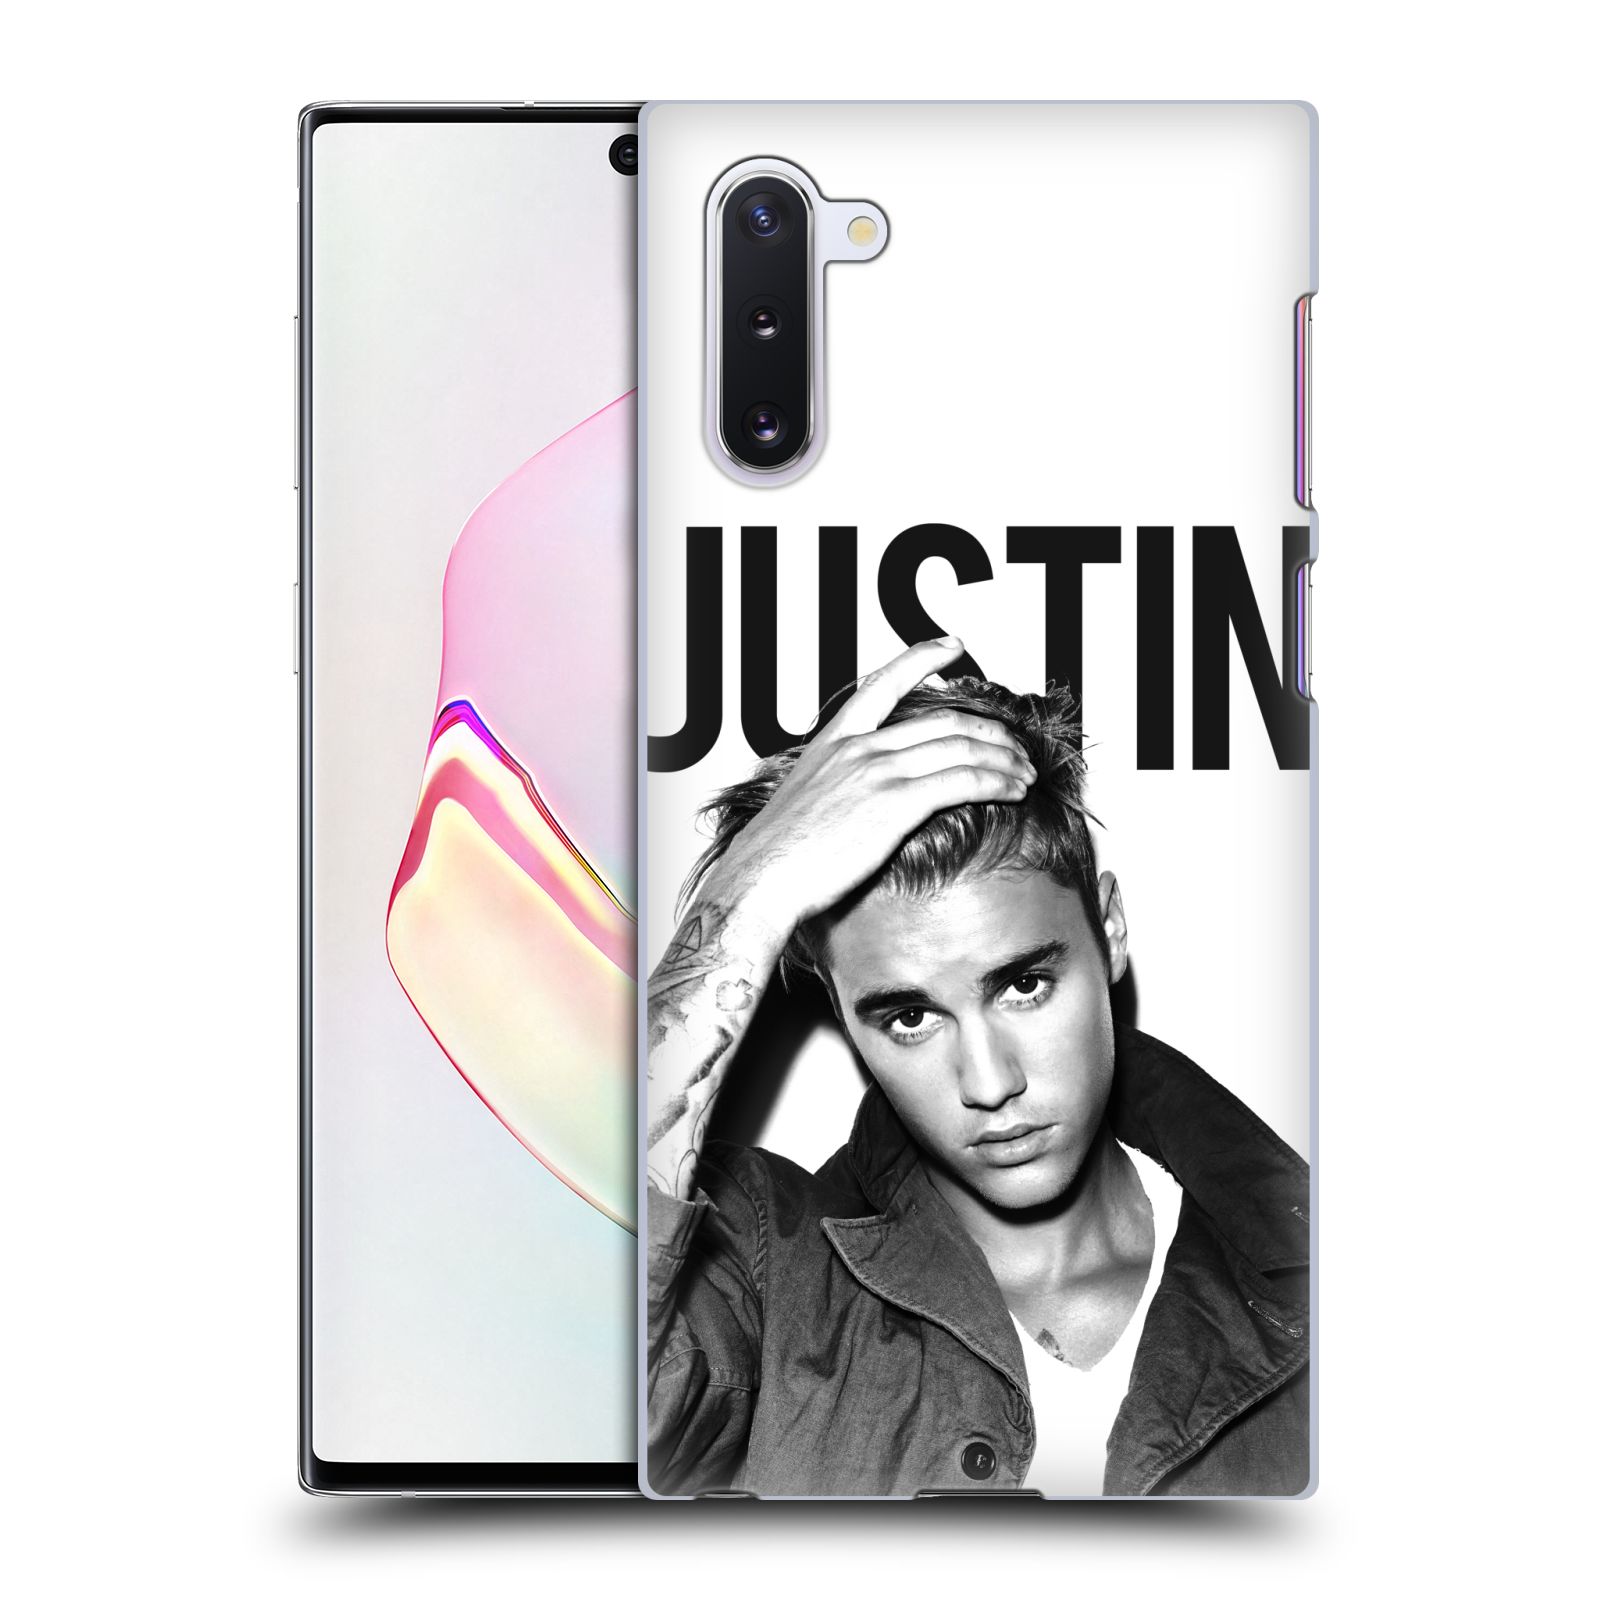 Pouzdro na mobil Samsung Galaxy Note 10 - HEAD CASE - Justin Bieber foto Purpose černá a bílá